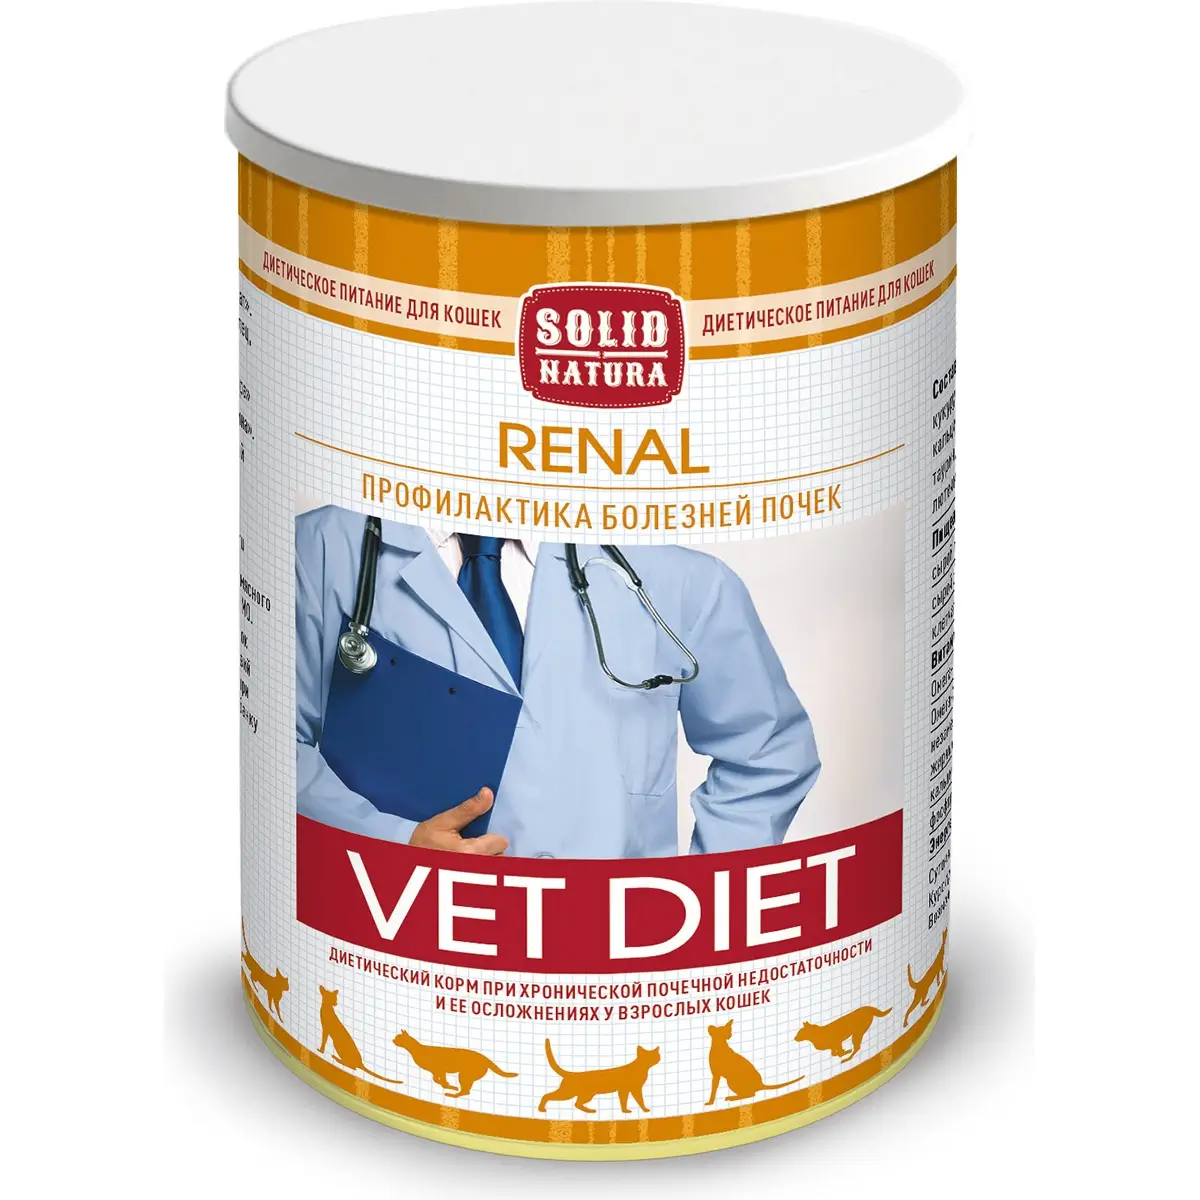 Диетические консервы SOLID NATURA VET Renal для кошек (Для профилактики болезней почек, жестяная банка, 340г)